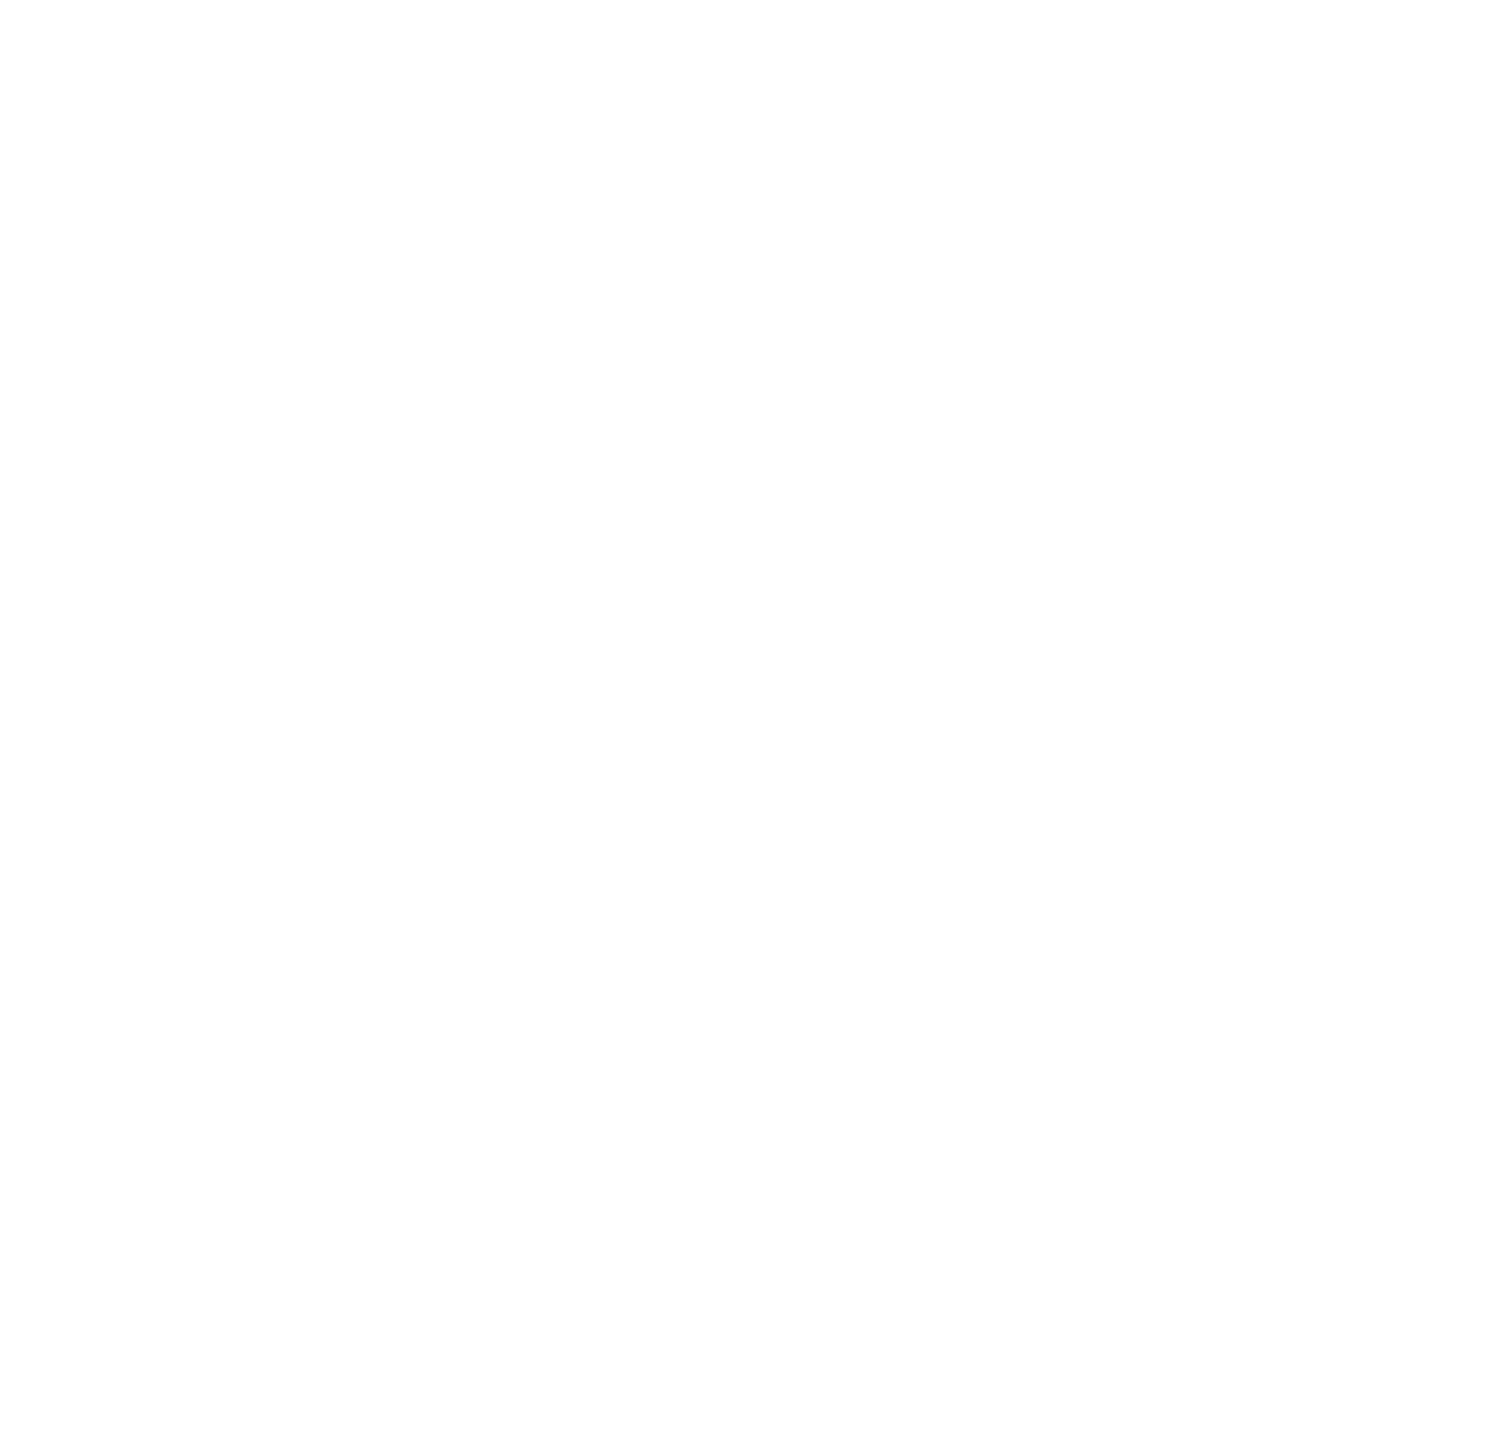 Bloomingfoods Co-op Market